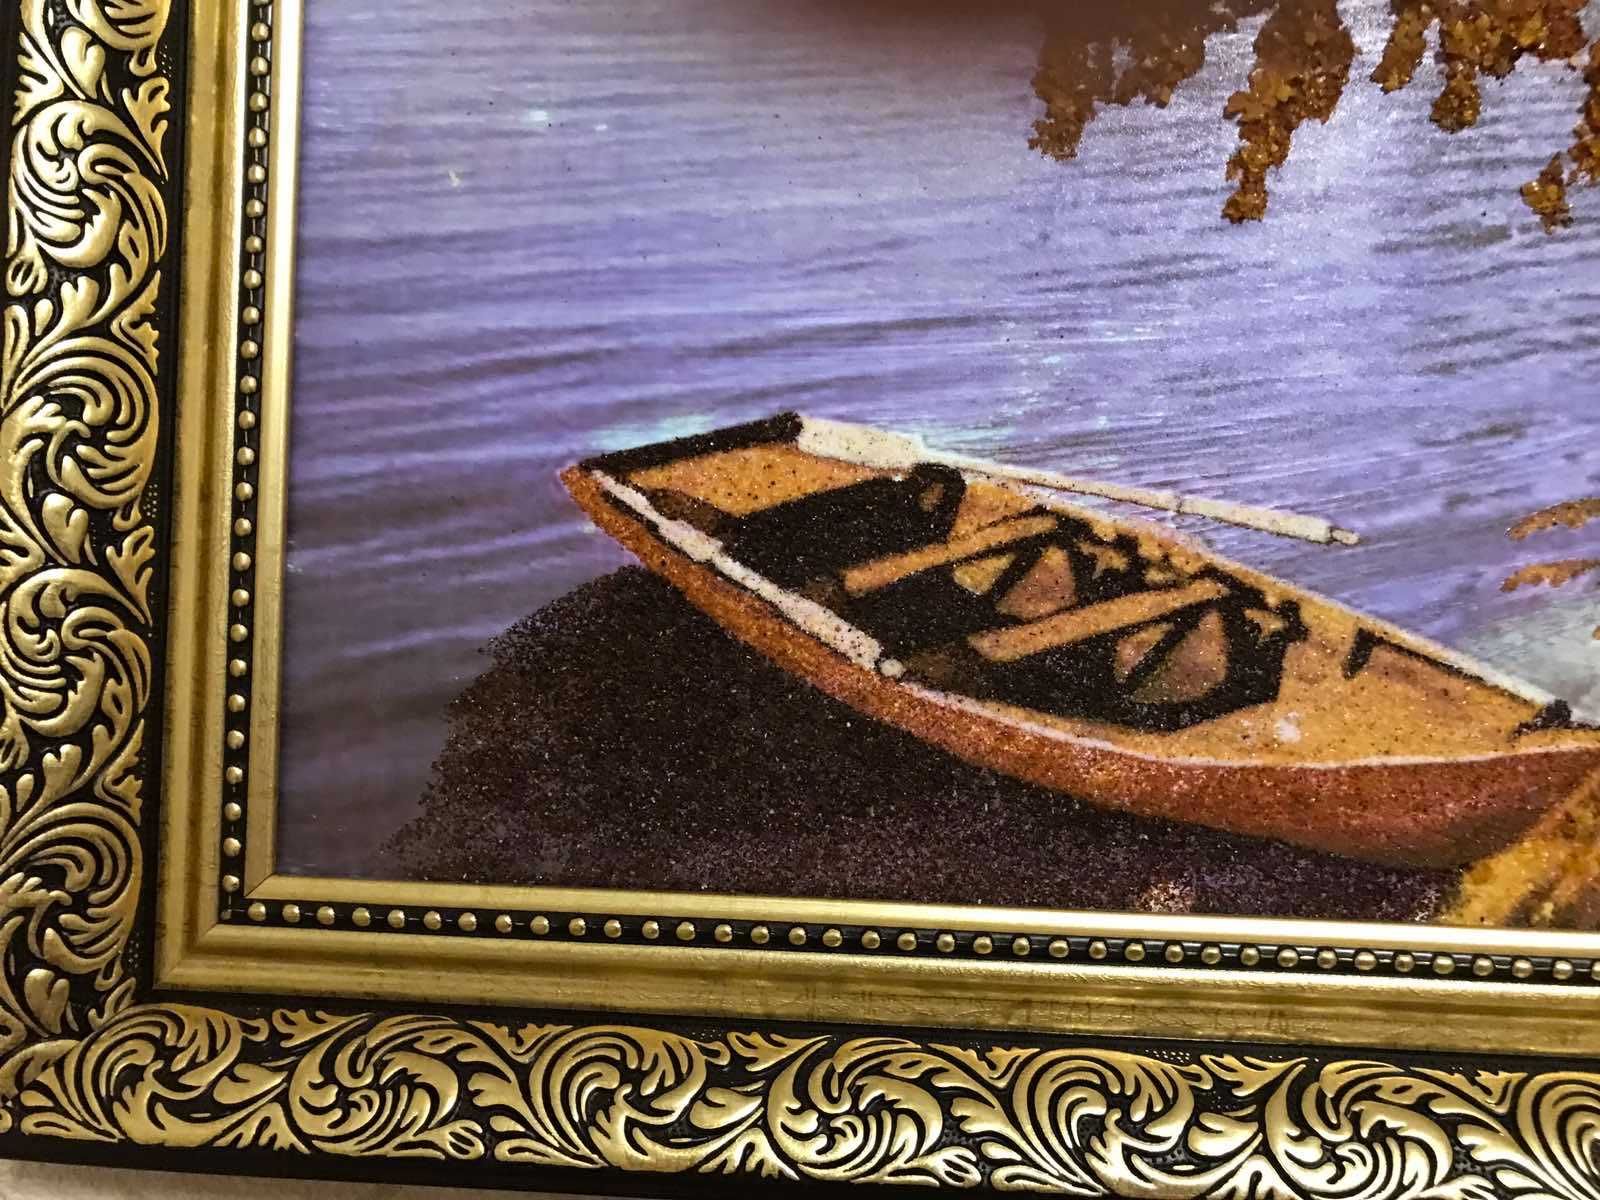 Картина с янтаря/ нова картина з бурштину 70х90 см. ціна знижена